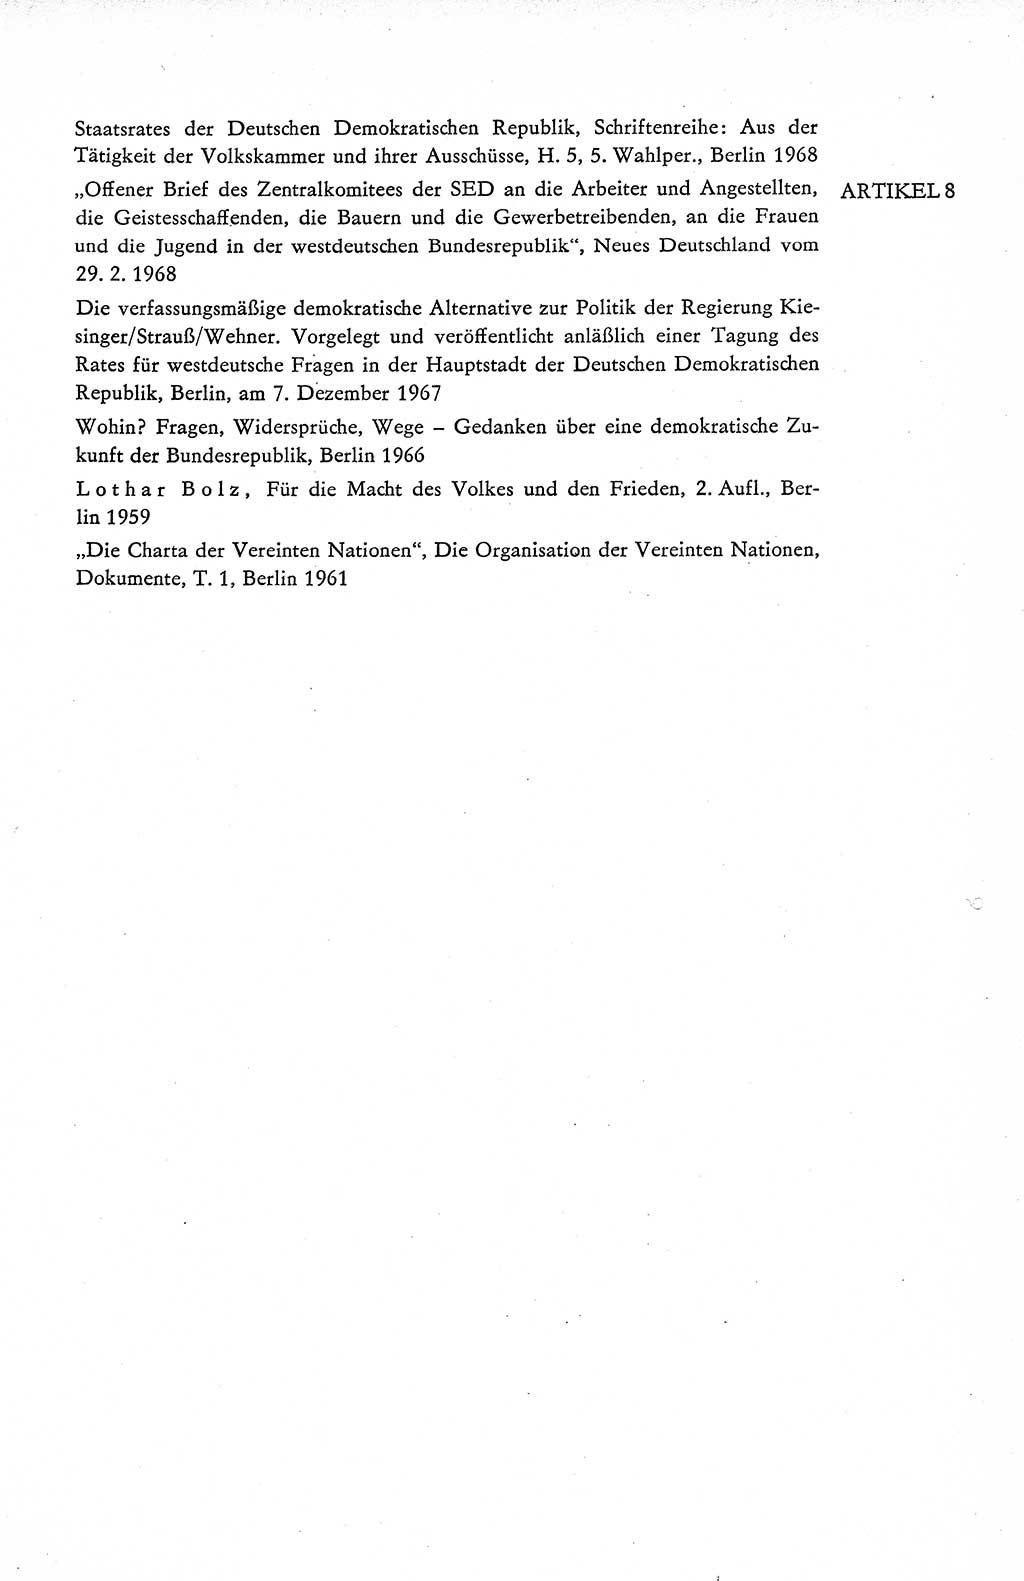 Verfassung der Deutschen Demokratischen Republik (DDR), Dokumente, Kommentar 1969, Band 1, Seite 315 (Verf. DDR Dok. Komm. 1969, Bd. 1, S. 315)